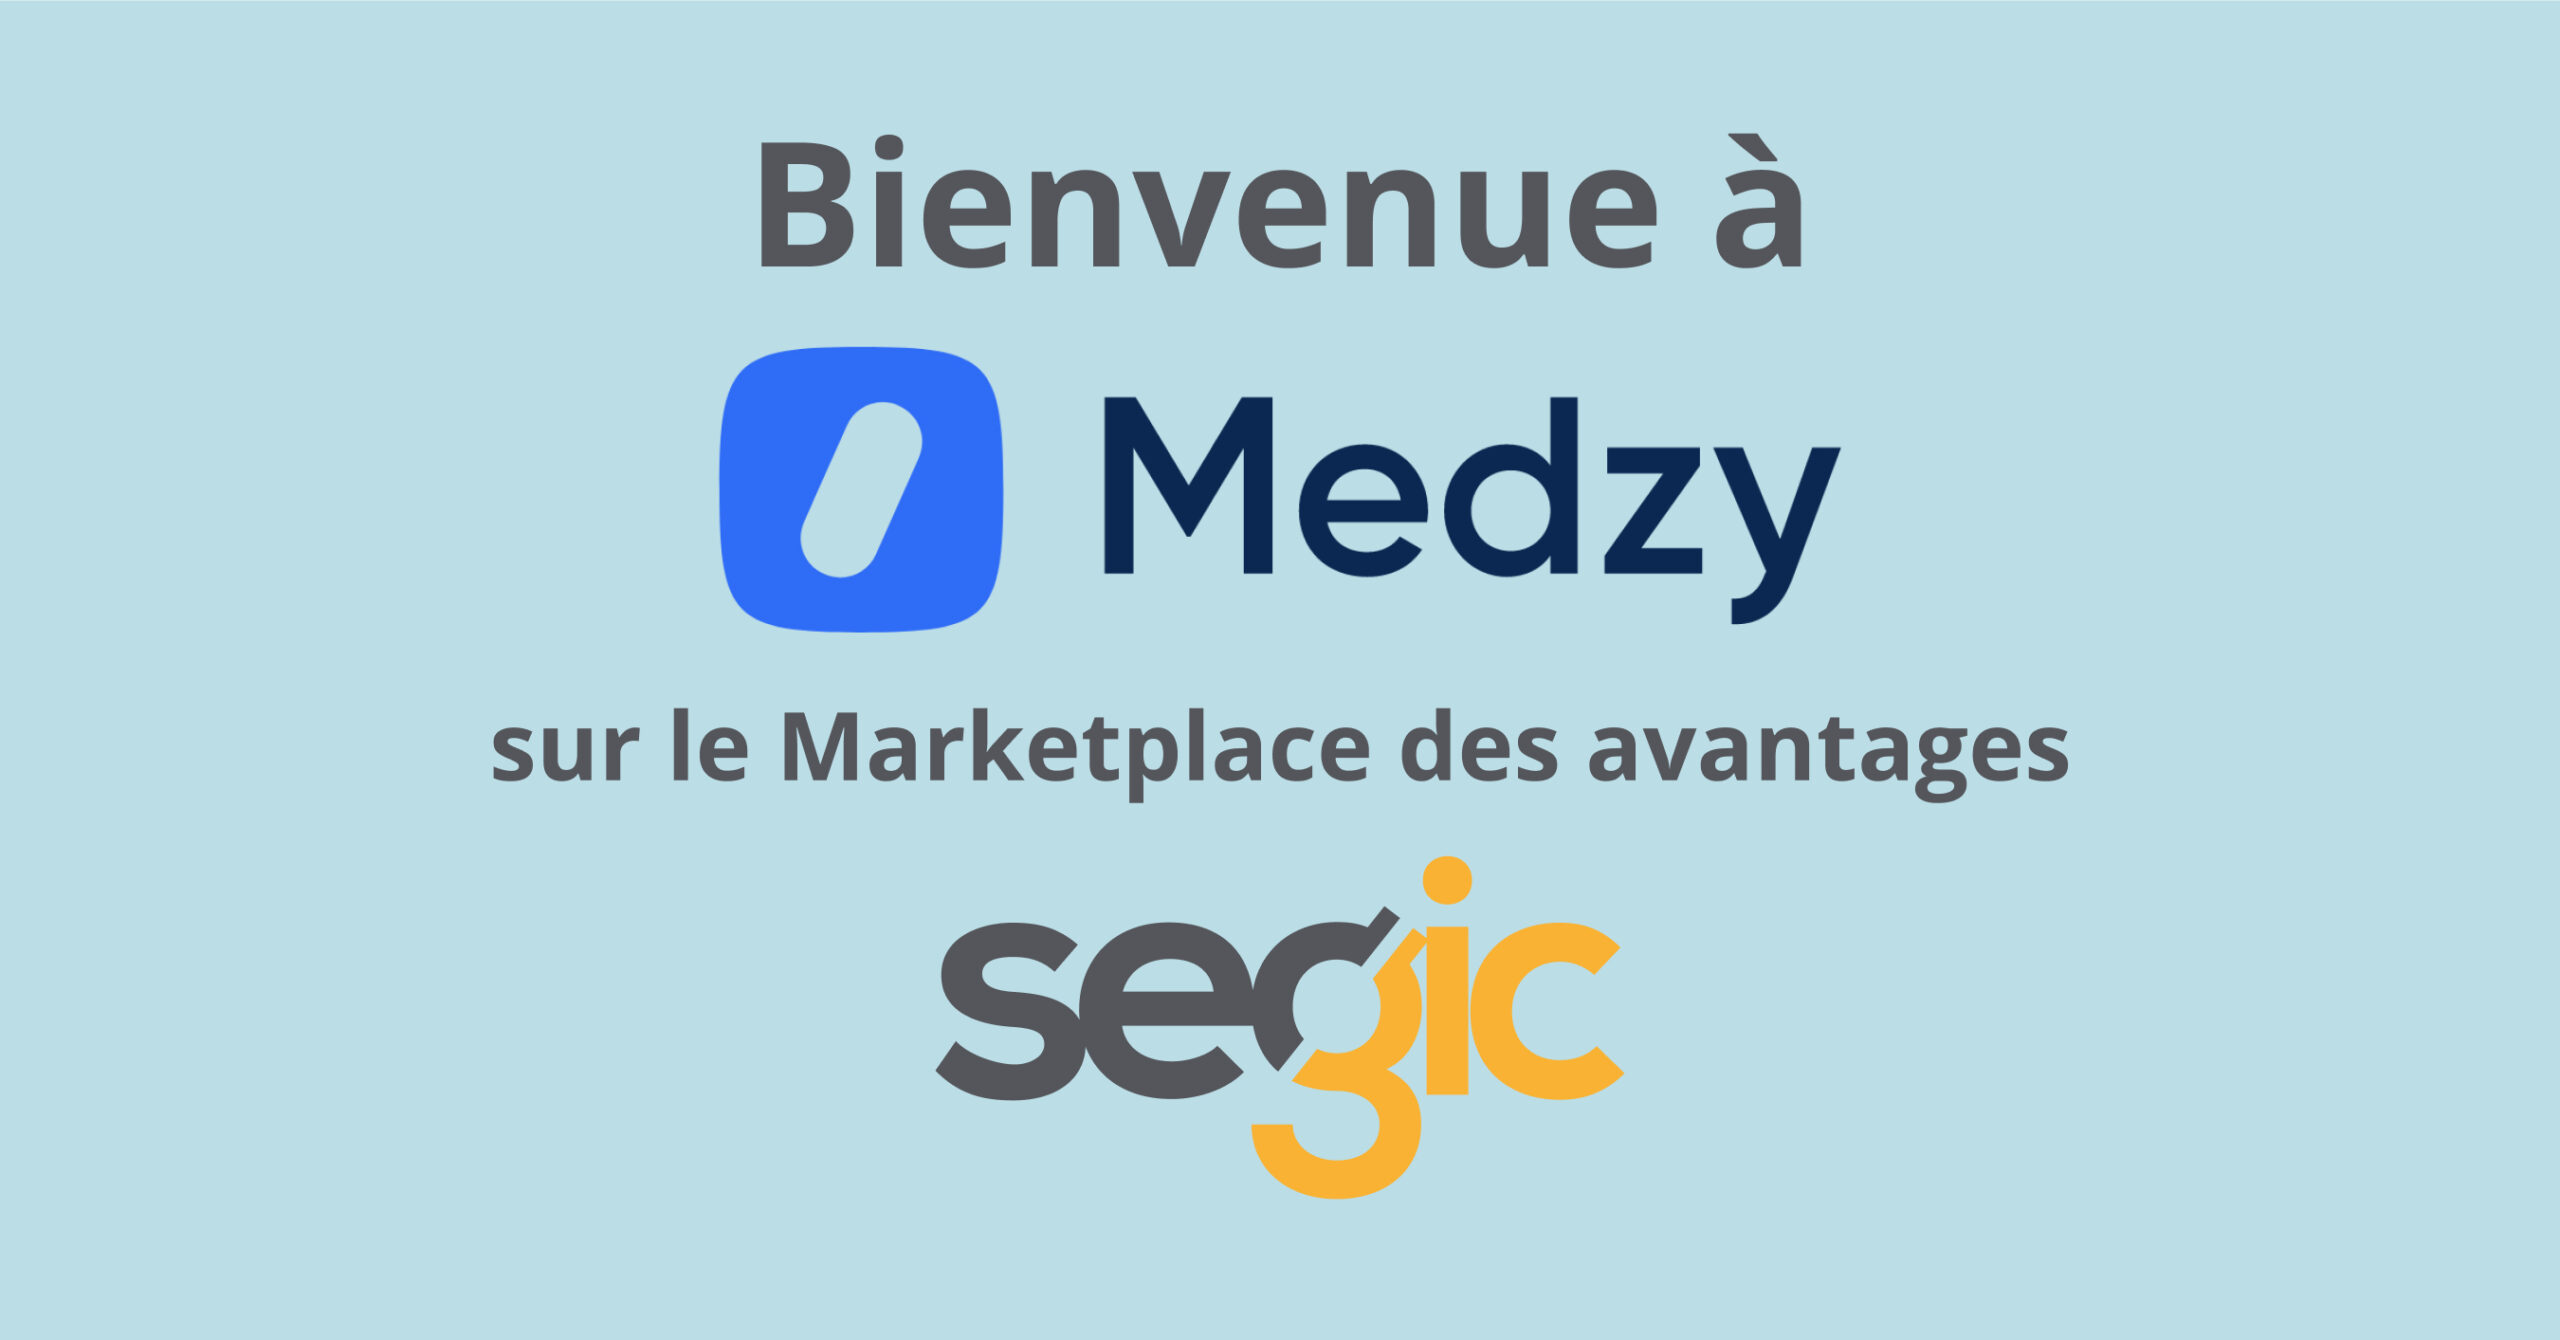 Medzy et Segic s’associent pour offrir des services de soins de santé virtuels et de bien-être sur le Marketplace des avantages de Segic